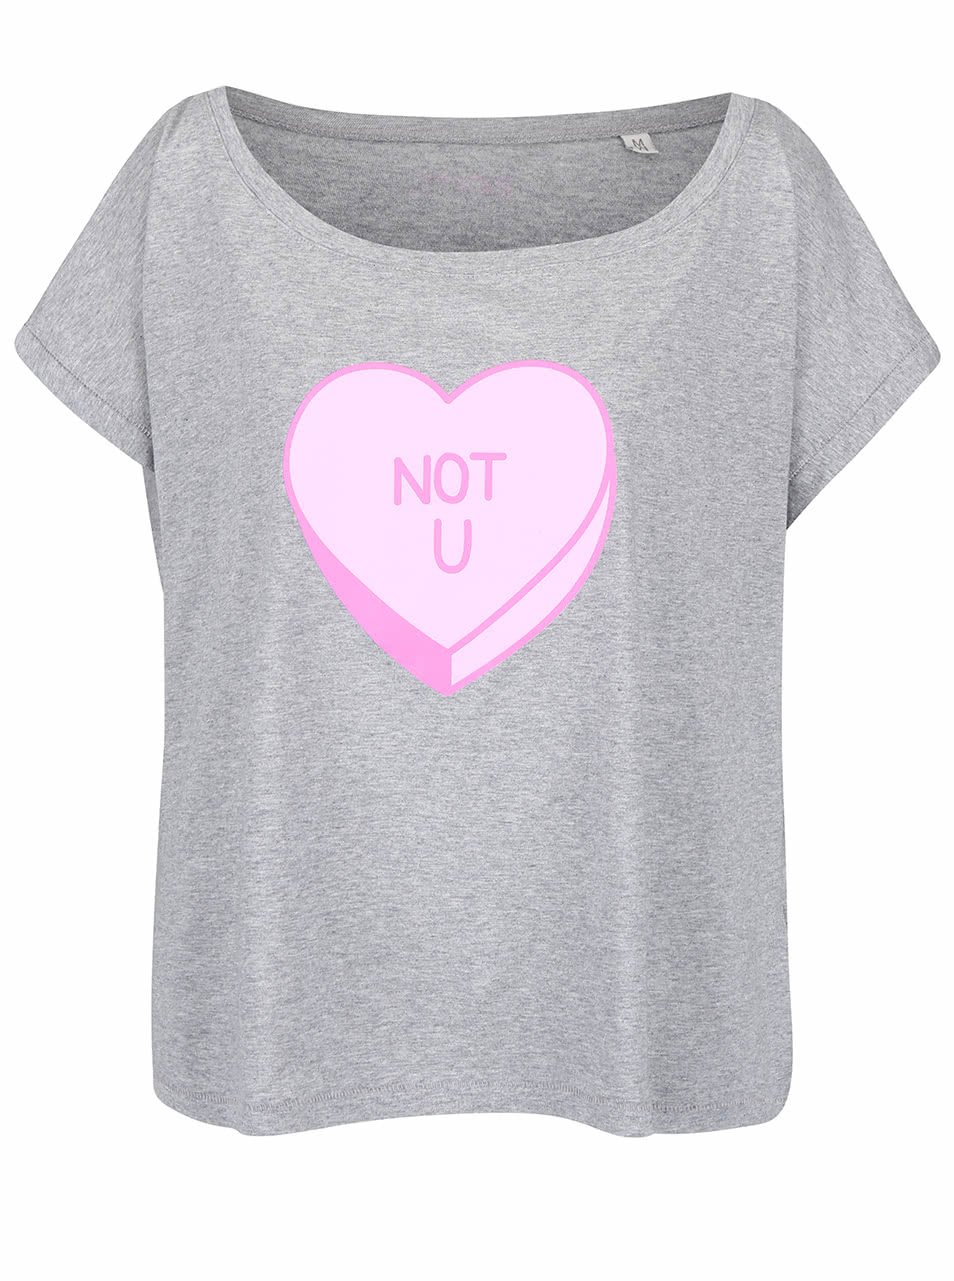 Šedé dámské volnější tričko ZOOT Originál Not You